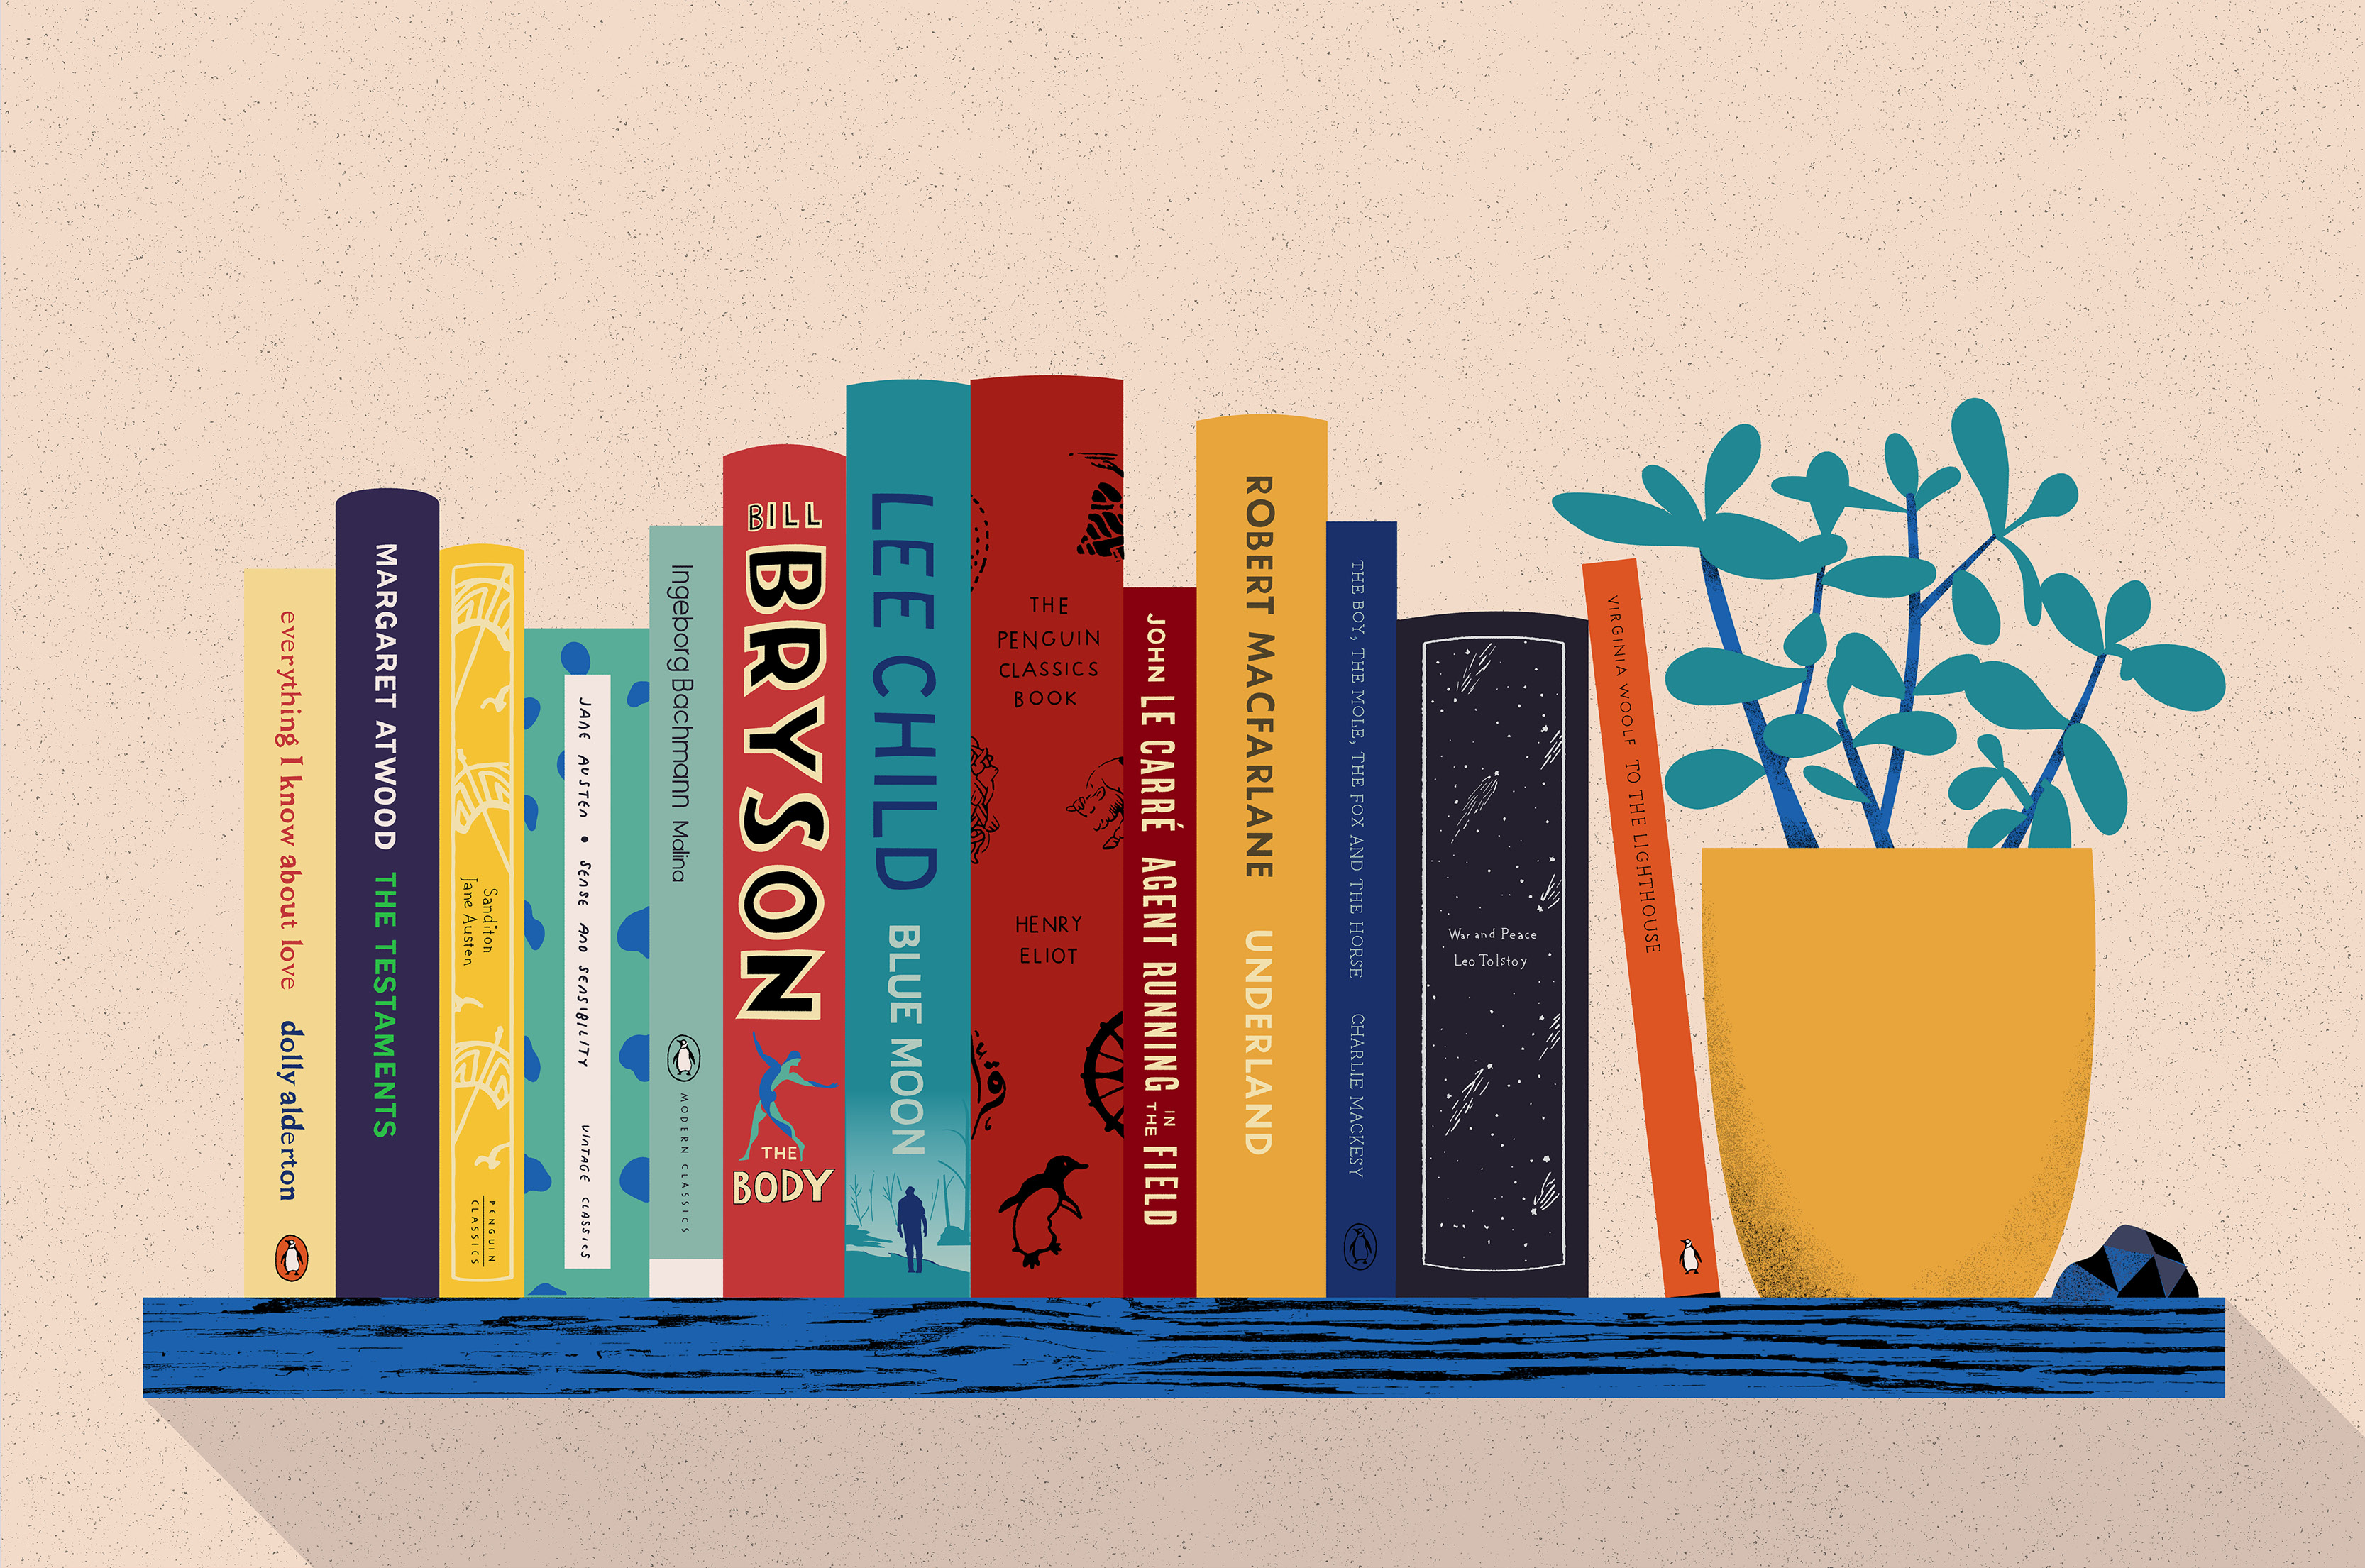 An illustration of an alphabetised bookshelf.